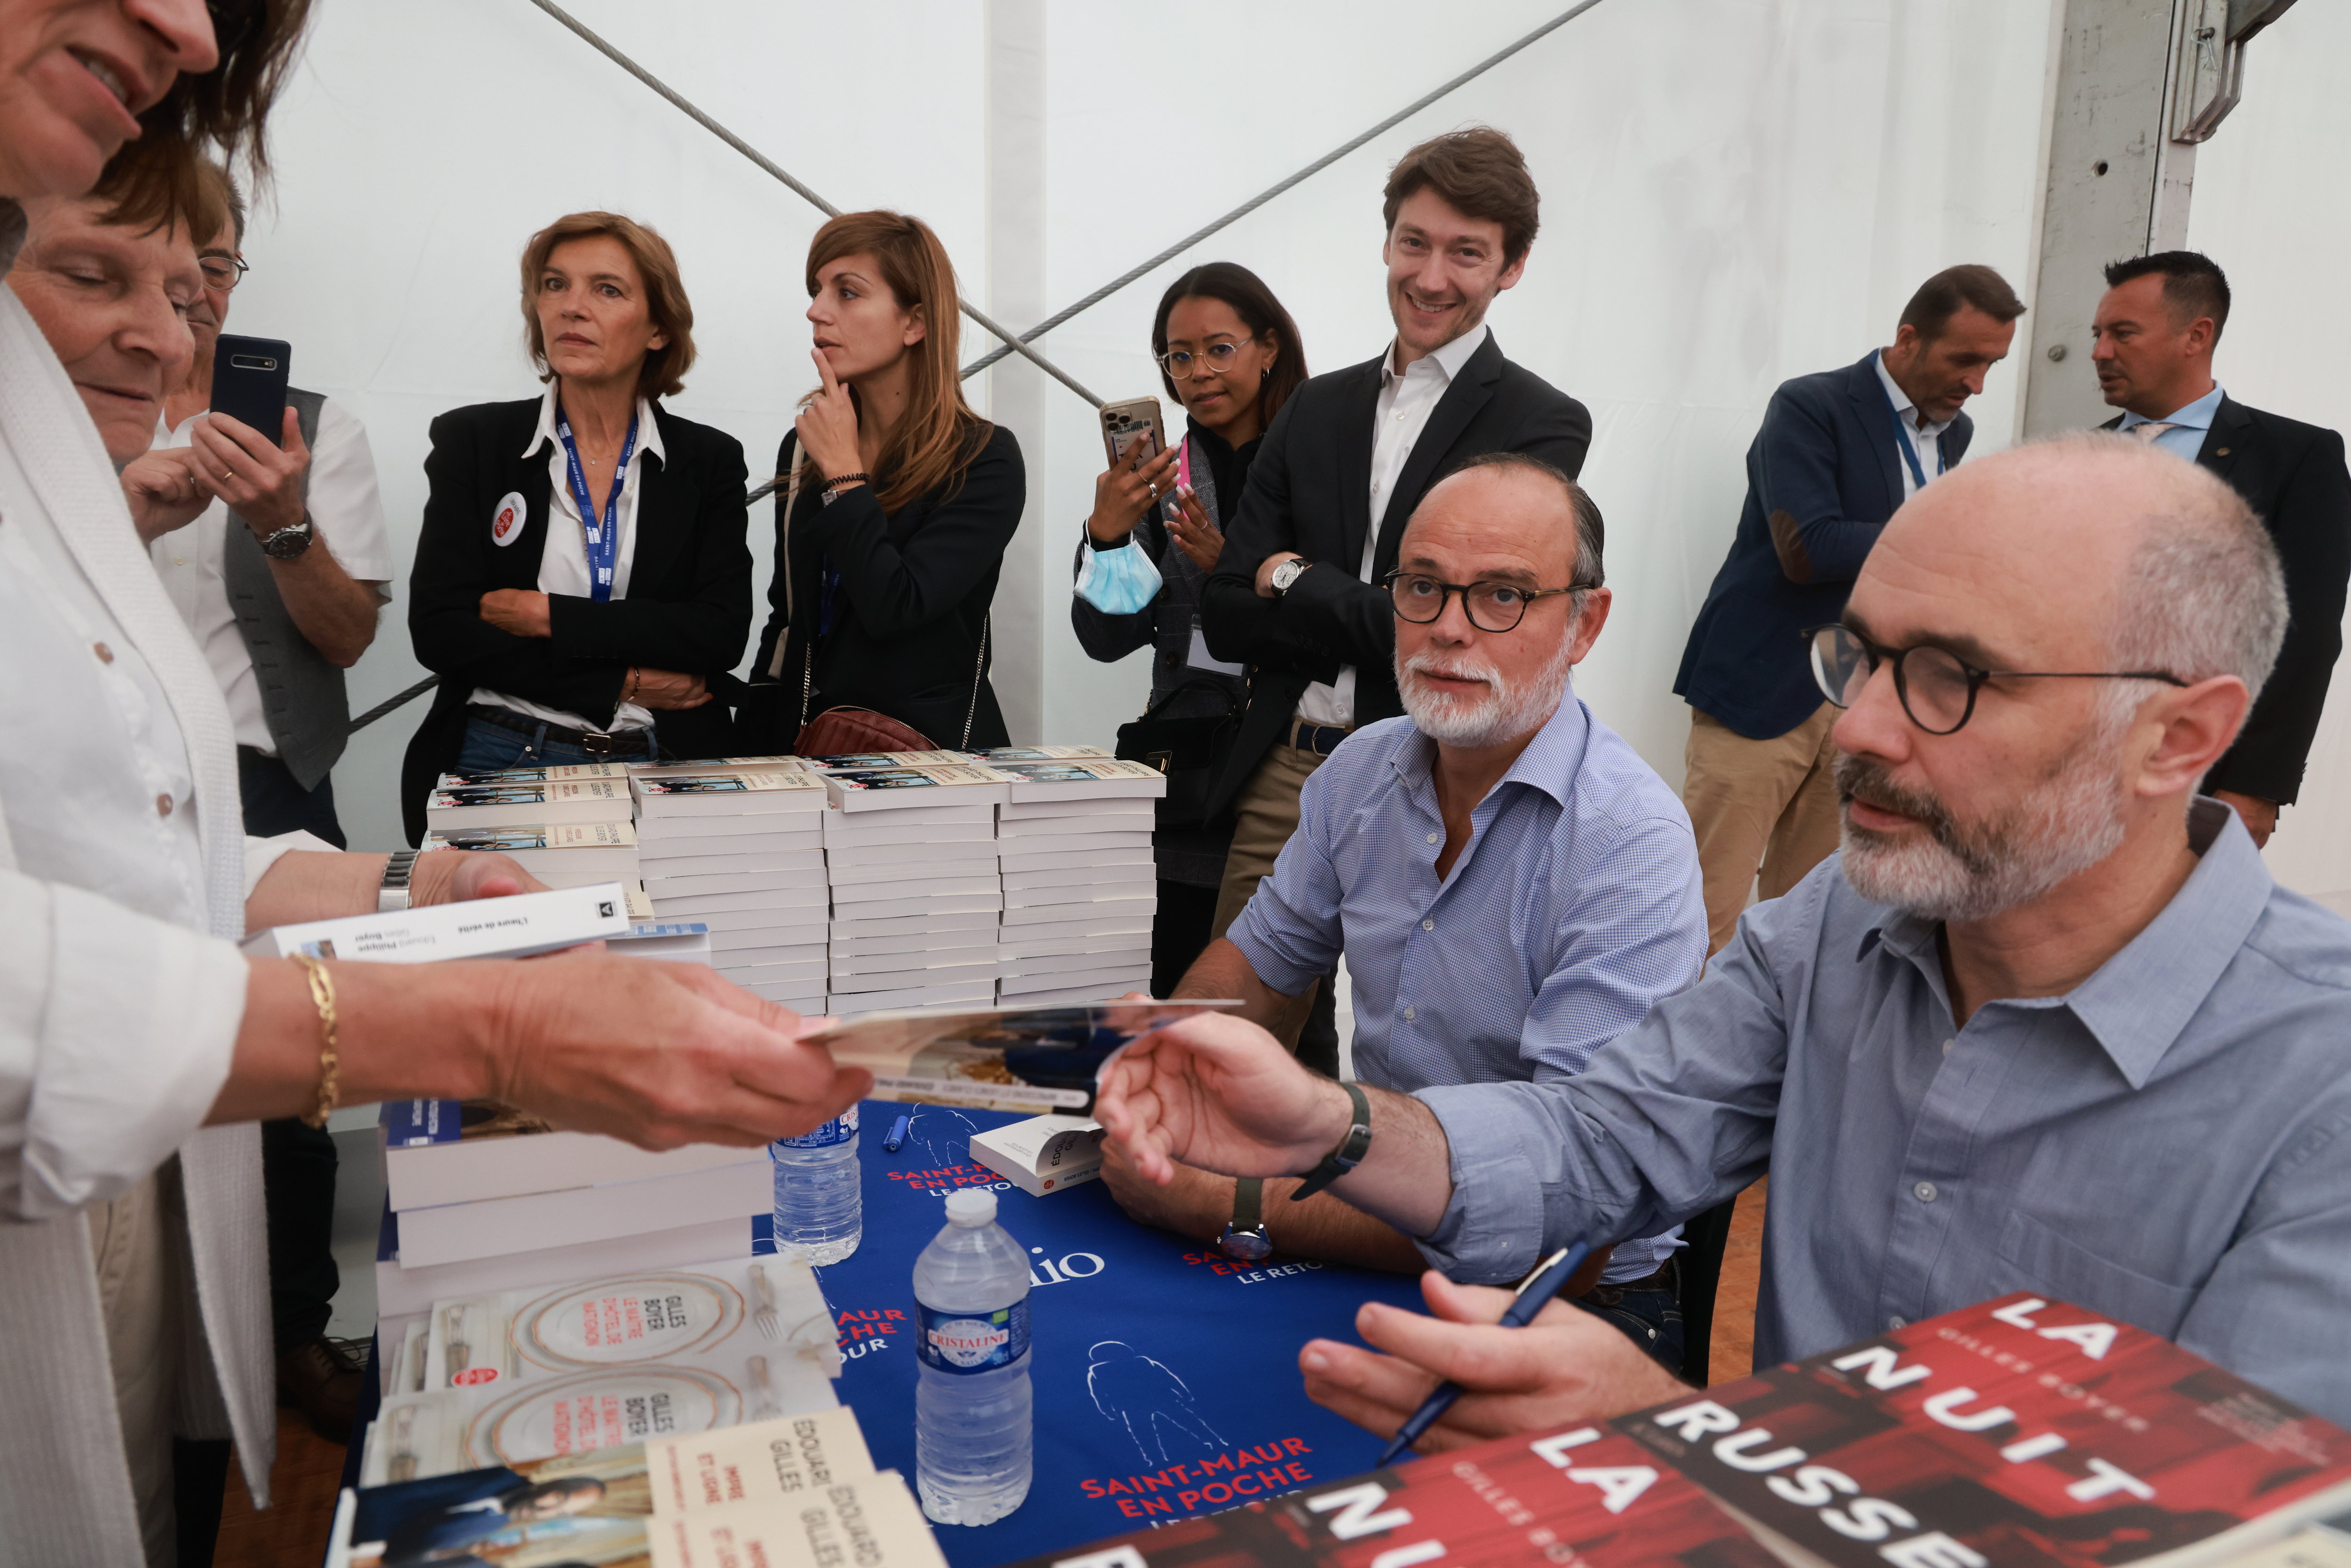 Edouard Philippe et Gilles Boyer signant ensemble leur dernier livre, "La nuit russe", au festival du livre de poche de Saint Maur, en juin dernier. LP/Philippe Lavieille